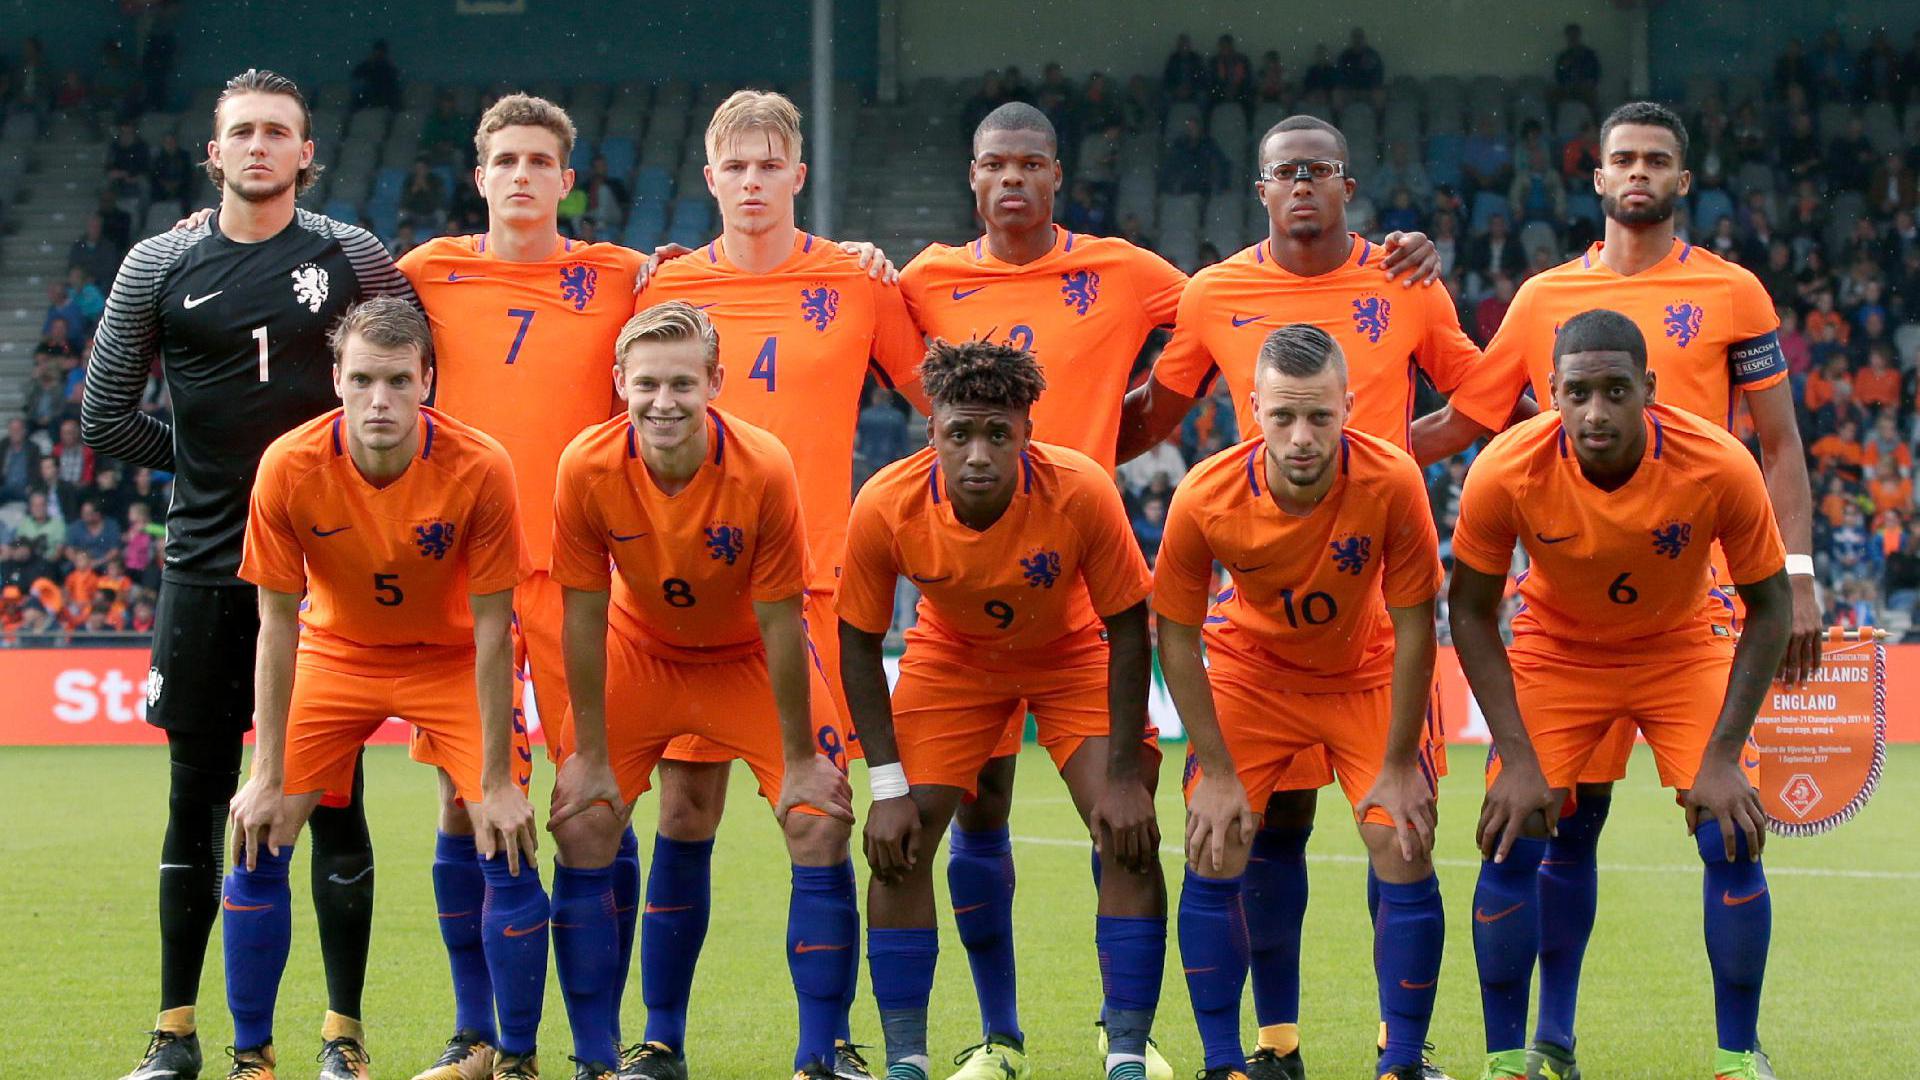 Jong Oranje tegen Schotland live op OnsOranje.nl | OnsOranje